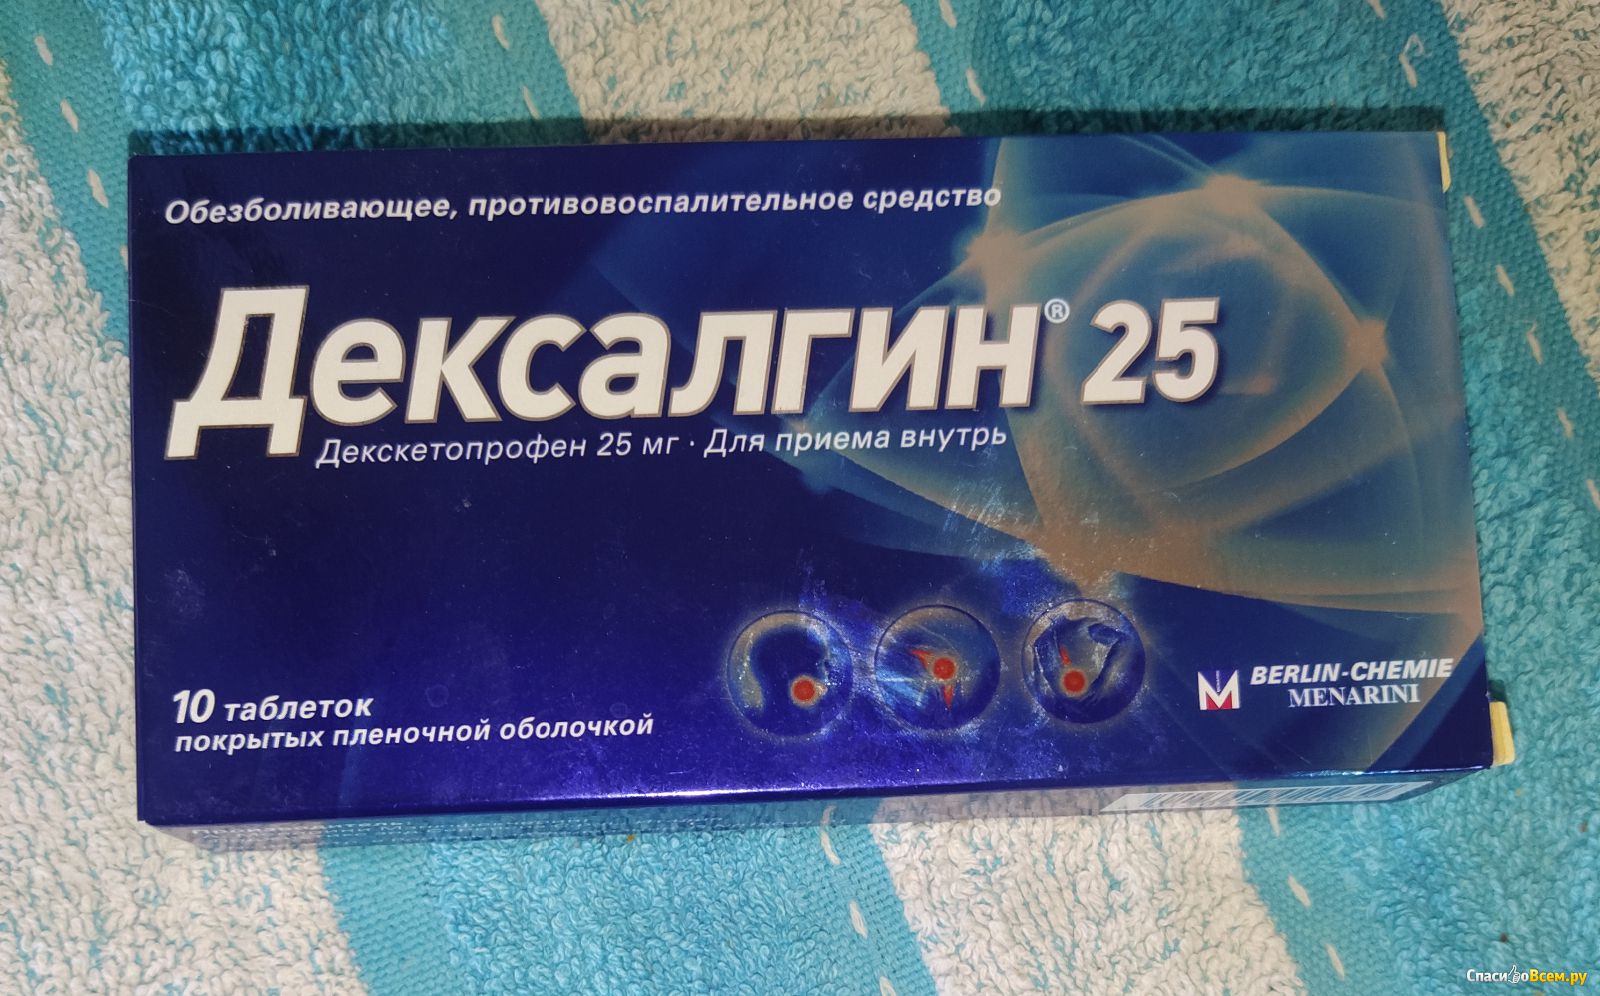 Сильные обезболивающие цена. Обезболивающие таблетки дексалгин. Дексалгин 25 таблетки красная упаковка.